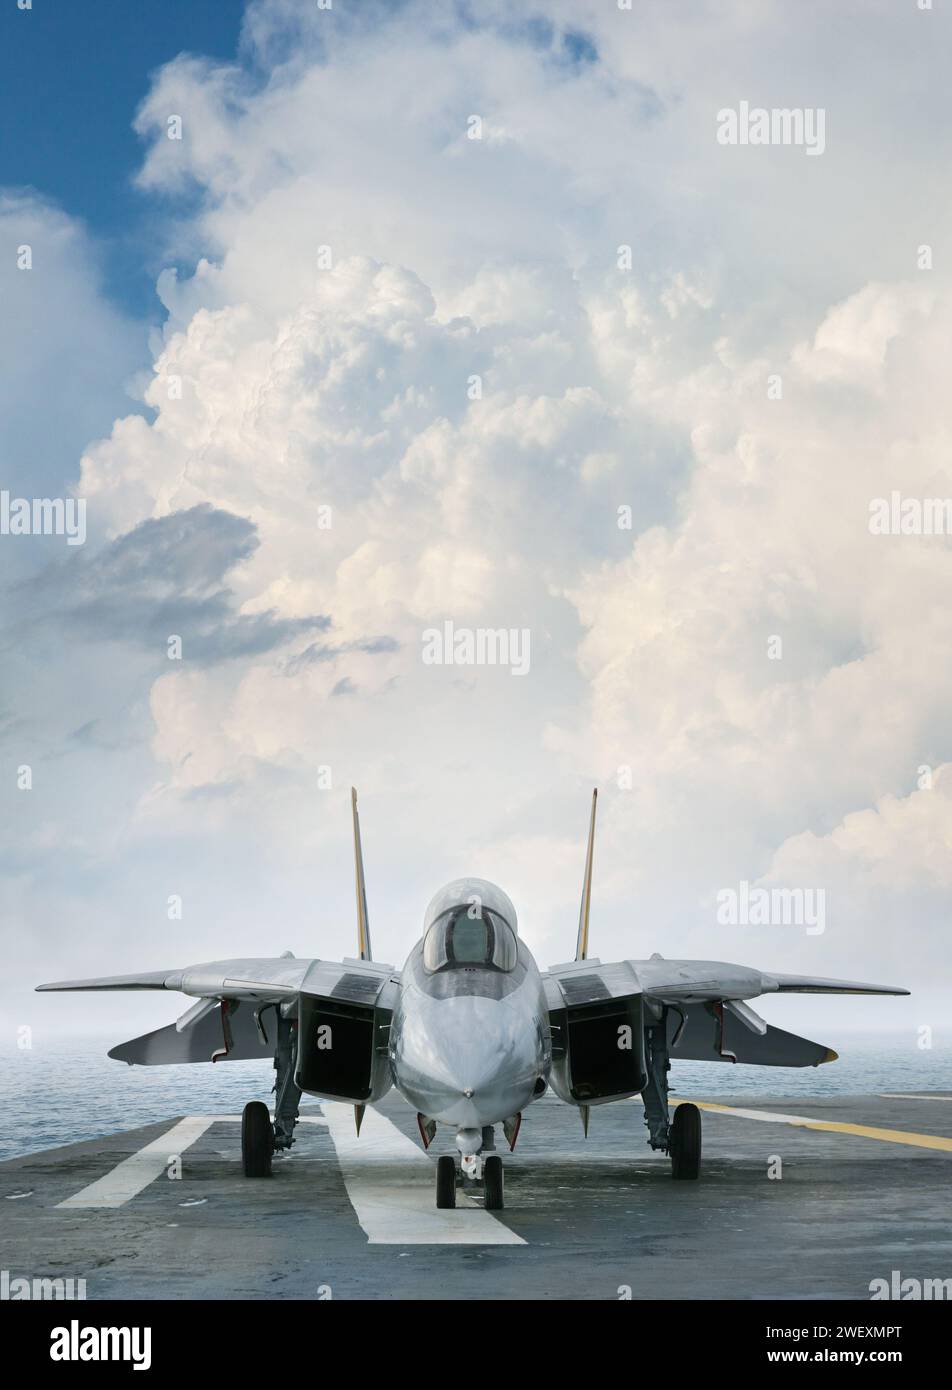 Un chasseur à réaction F-14 sur un pont de porte-avions sous des nuages spectaculaires vus de face Banque D'Images